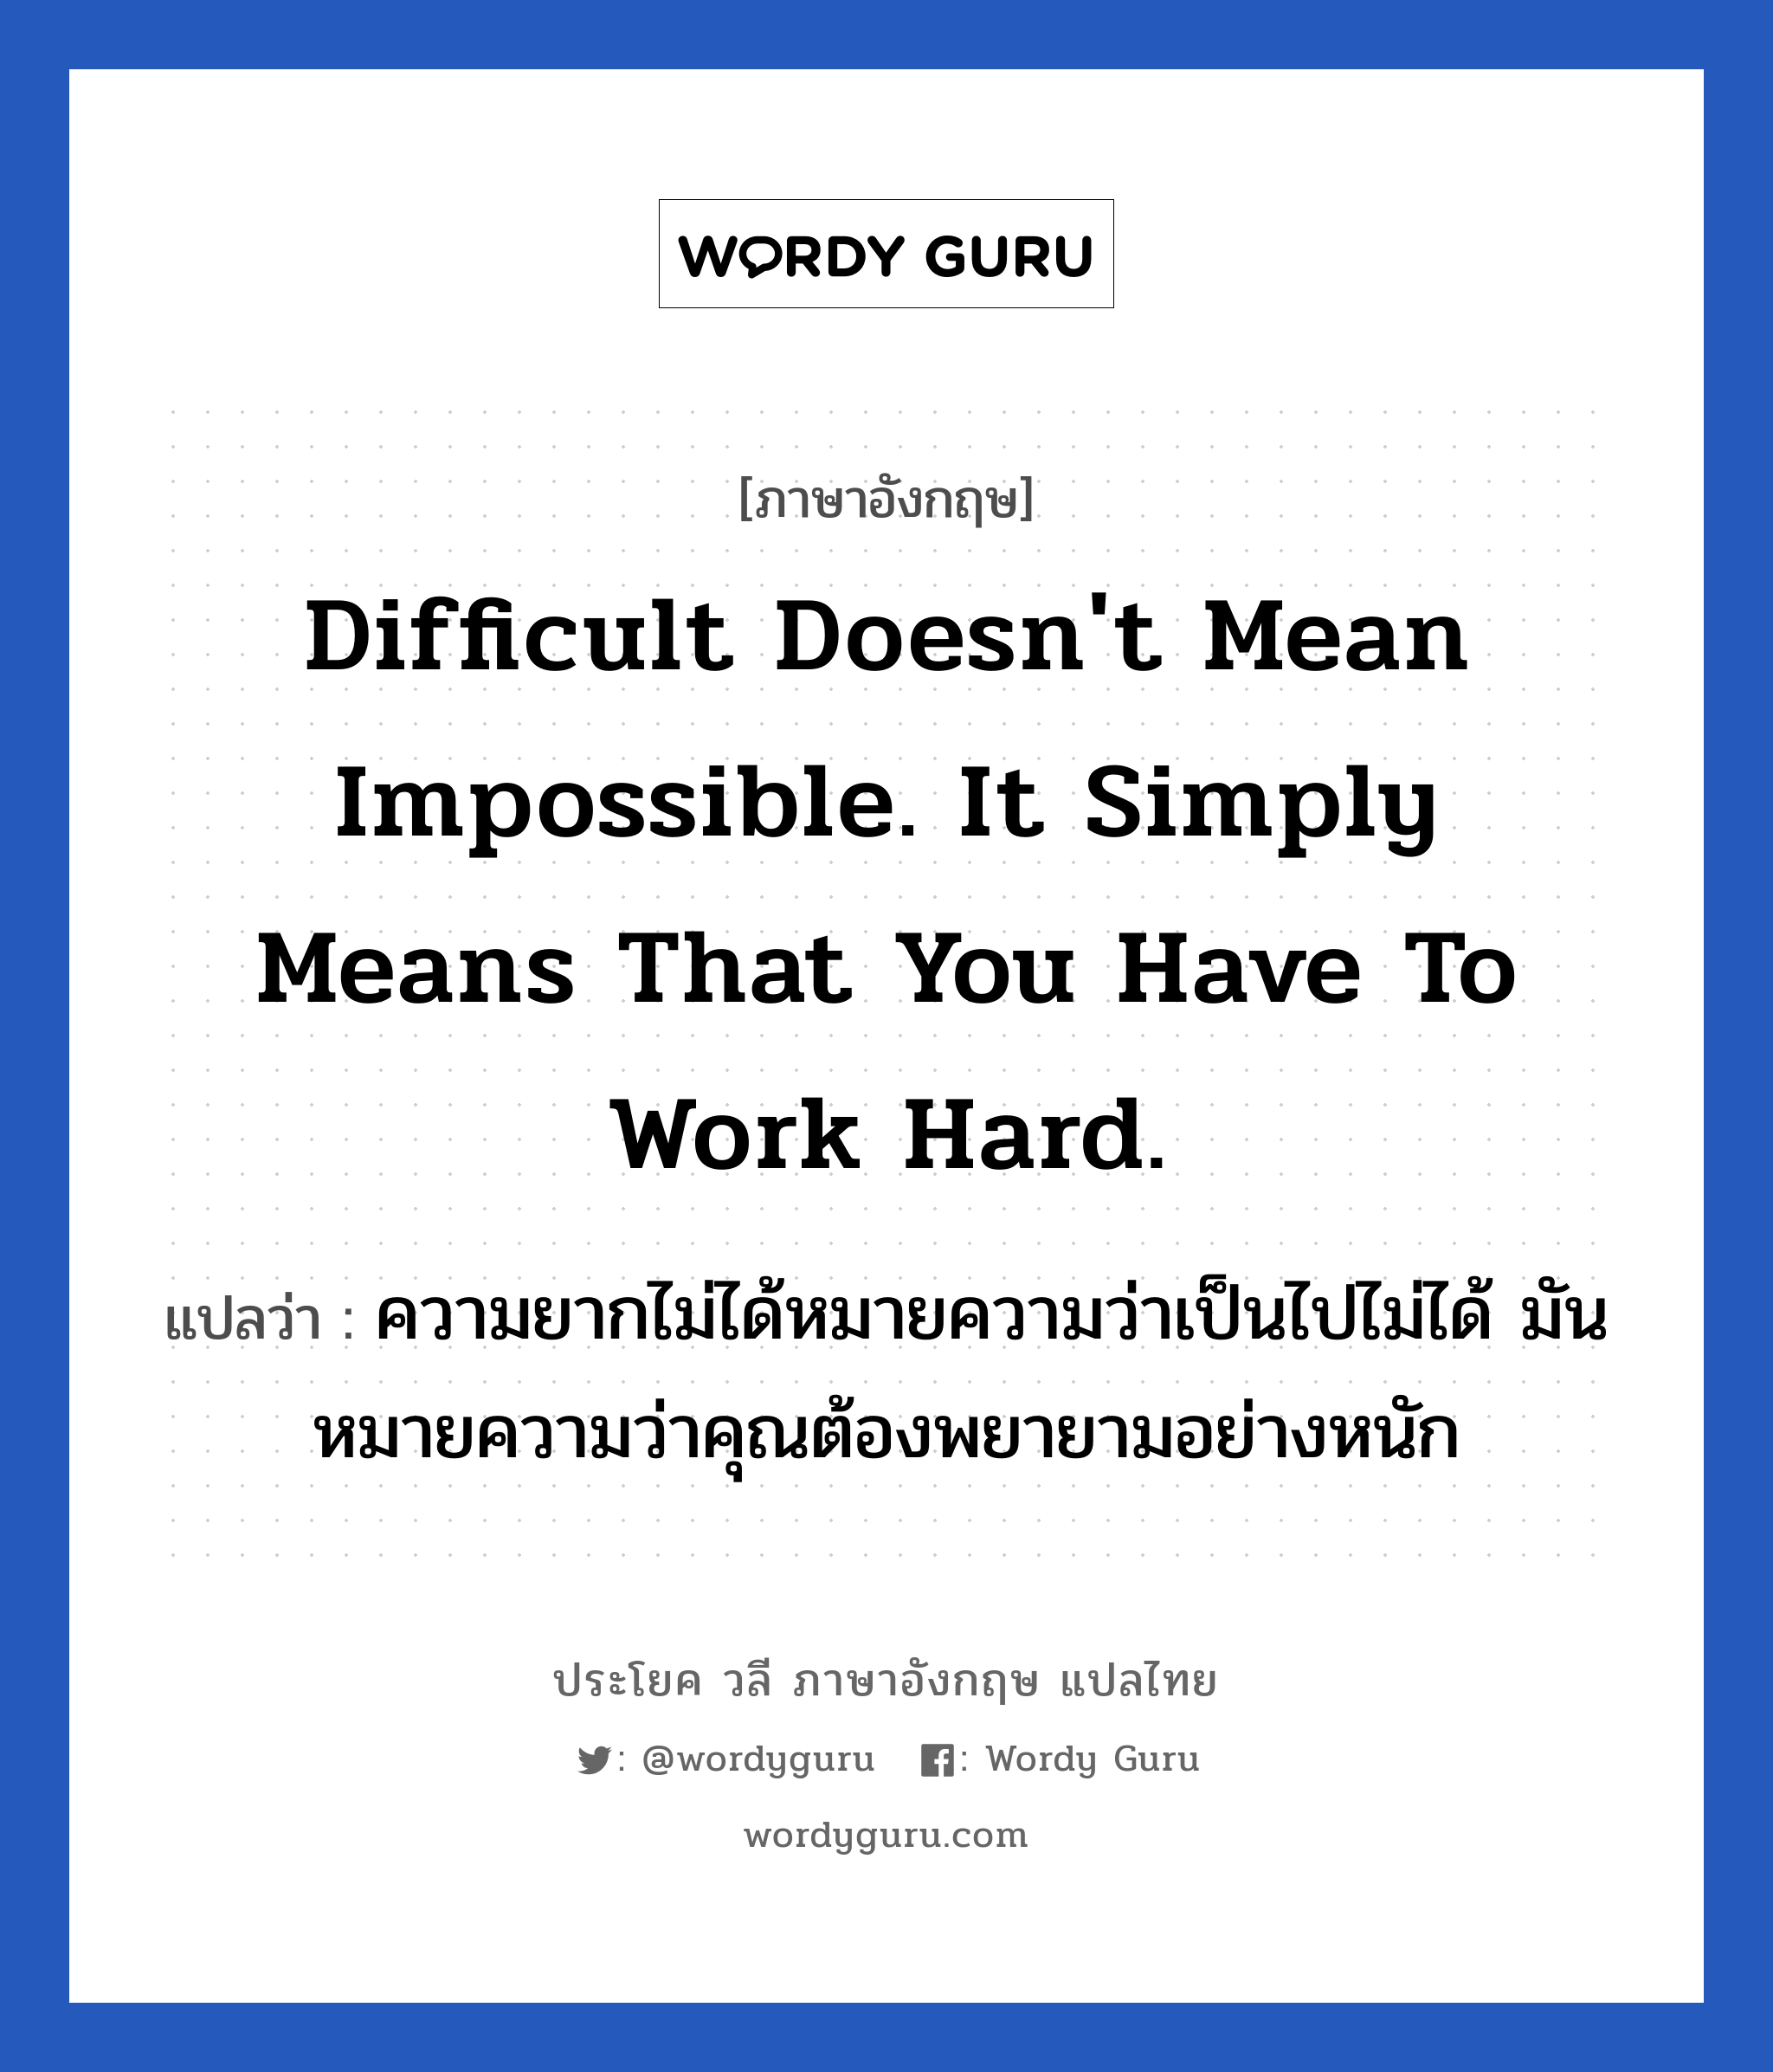 ความยากไม่ได้หมายความว่าเป็นไปไม่ได้ มันหมายความว่าคุณต้องพยายามอย่างหนัก ภาษาอังกฤษ?, วลีภาษาอังกฤษ ความยากไม่ได้หมายความว่าเป็นไปไม่ได้ มันหมายความว่าคุณต้องพยายามอย่างหนัก แปลว่า Difficult doesn't mean impossible. It simply means that you have to work hard. หมวด ในที่ทำงาน